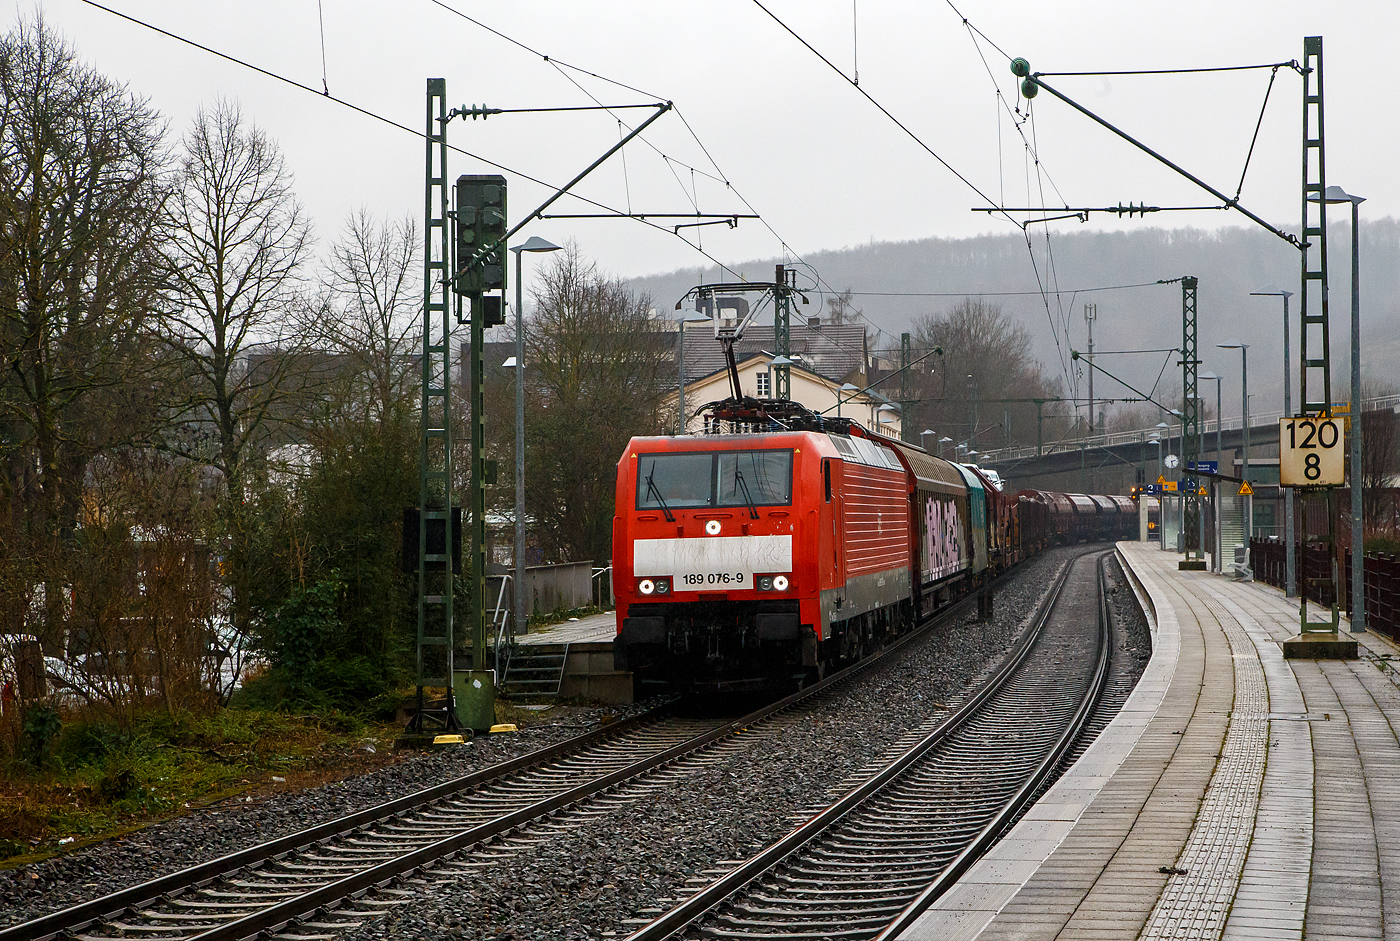 Die 189 078-9 (91 80 6189 078-9 D-DB, Class 189- VJ) der DB Cargo AG fährt am 31.01.2023 mit einem gemischten Güterzug durch den Bahnhof Kirchen (Sieg) in Richtung Köln.

Die SIEMENS EuroSprinter ES 64 F4 wurde 2005 von Siemens in München-Allach unter der Fabriknummer 21063 gebaut und in der Variante B ausgeliefert und war nur für Deutschland zugelassen. 2007 wurde sie in die Variante J umgebaut und hat so nun die Zulassungen für Deutschland und die Niederlande.

Die BR 189 (Siemens ES64F4) hat eine Vier-Stromsystem-Ausstattung, diese hier hat die Variante J (Class 189-VJ) und besitzt so die Zugbeeinflussungssysteme LZB/PZB, ETCS und ATB für den Einsatz in Deutschland und den Niederlanden.
Die Stromabnehmerbestückung ist folgende: 
Pos. 1: D, NL (AC)
Pos. 2: NL (DC)
Pos. 3: NL (DC)
Pos. 4: D, NL (AC)
